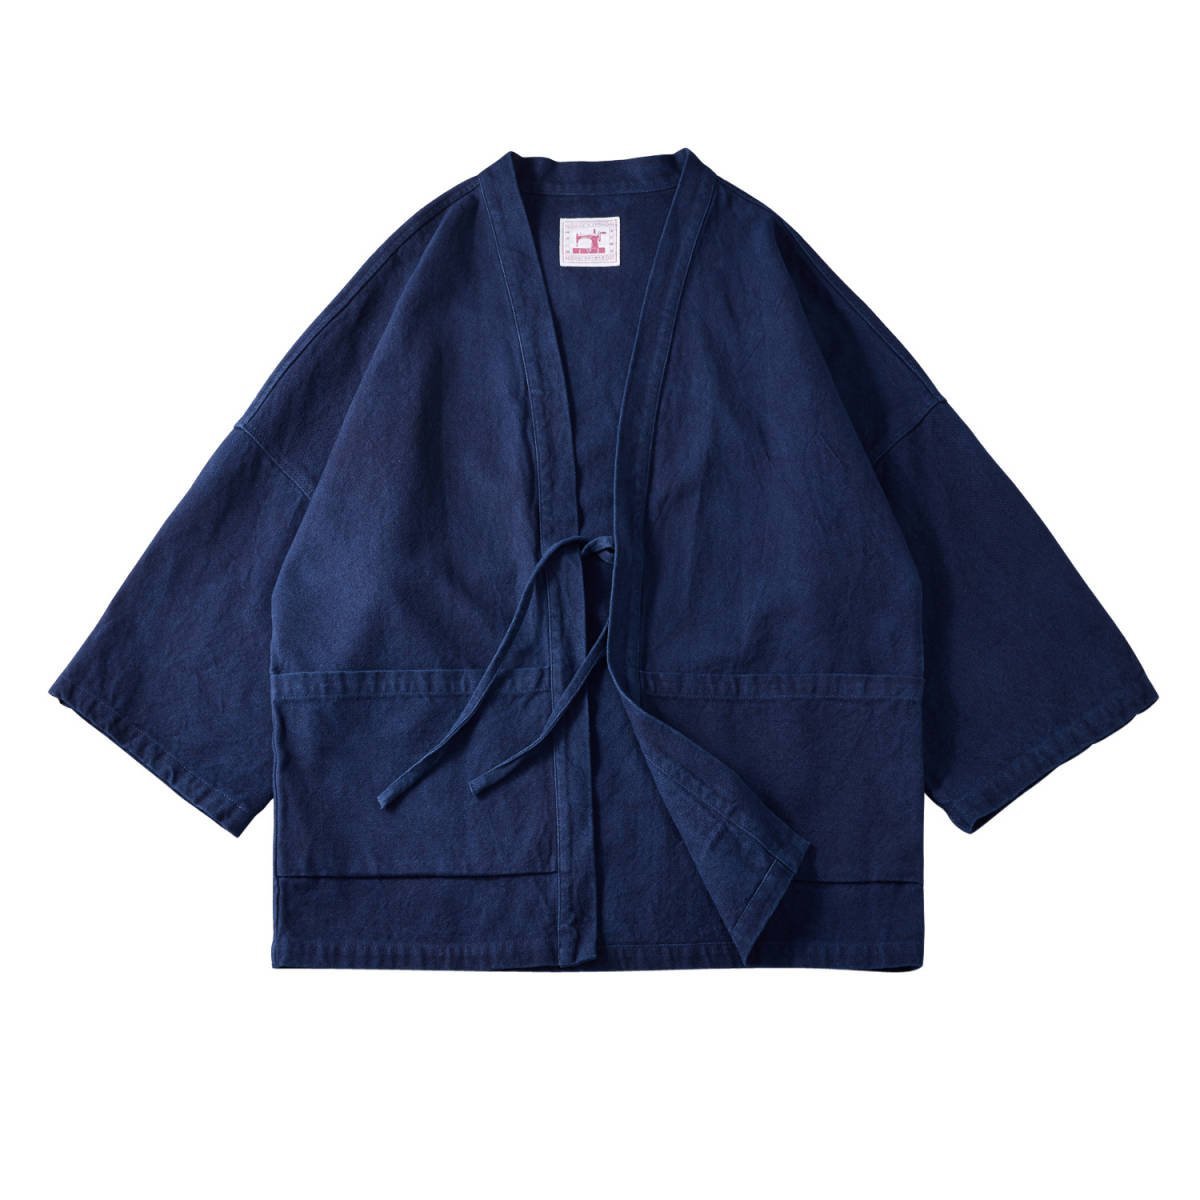 職人手作り 藍染 カバーオール 半纏 褞袍 綿&麻 ワークジャケット ゆったり 大きいサイズ 天然藍 インディゴ 薄手 M~2XL_画像1